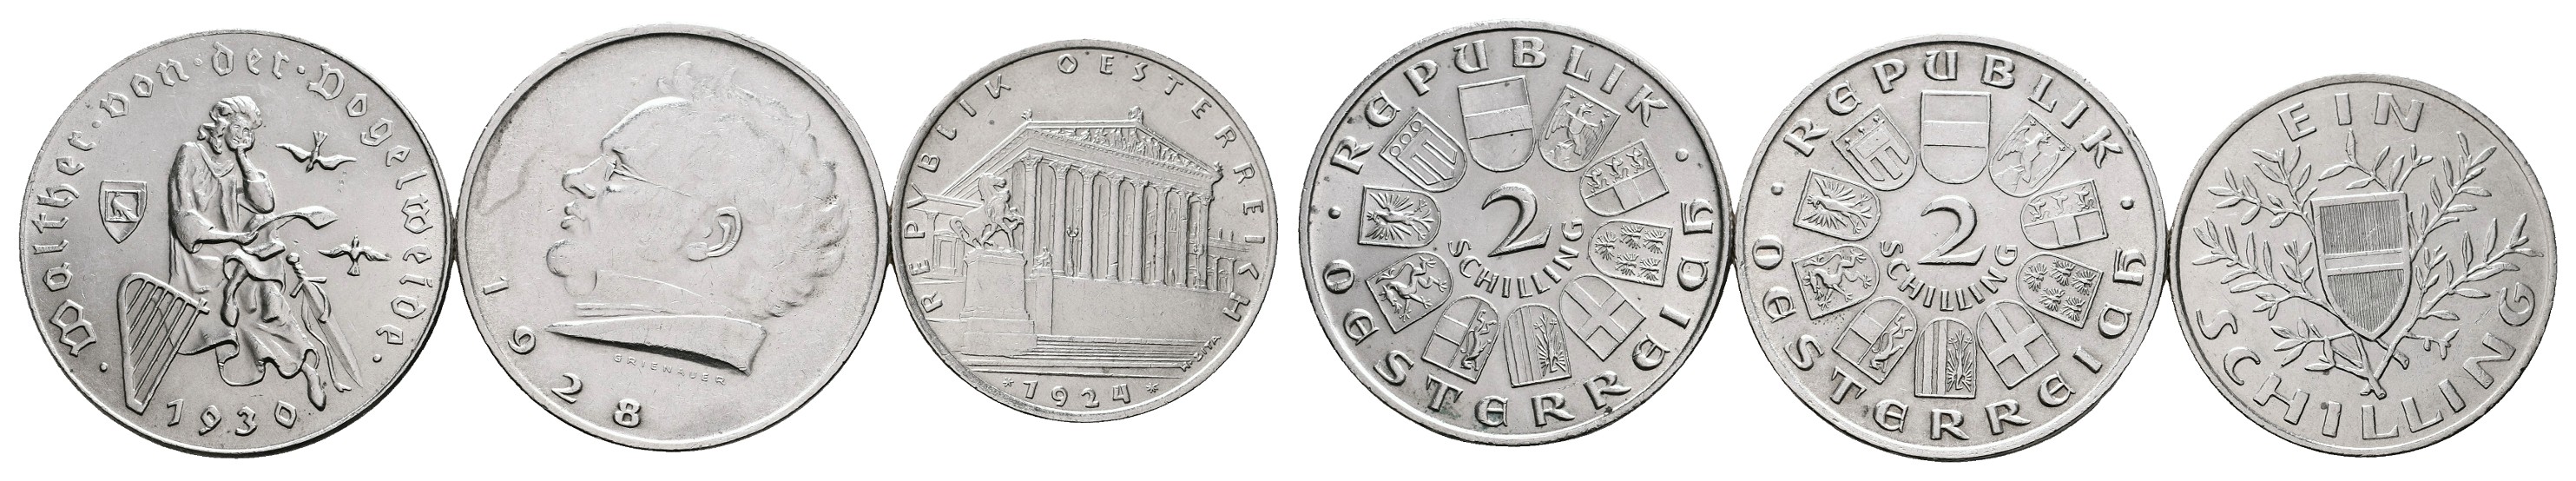  MGS BRD Silbermedaille zu 10 Euro mit Briefmarke Ludwigstein Feingewicht: 26,27g   